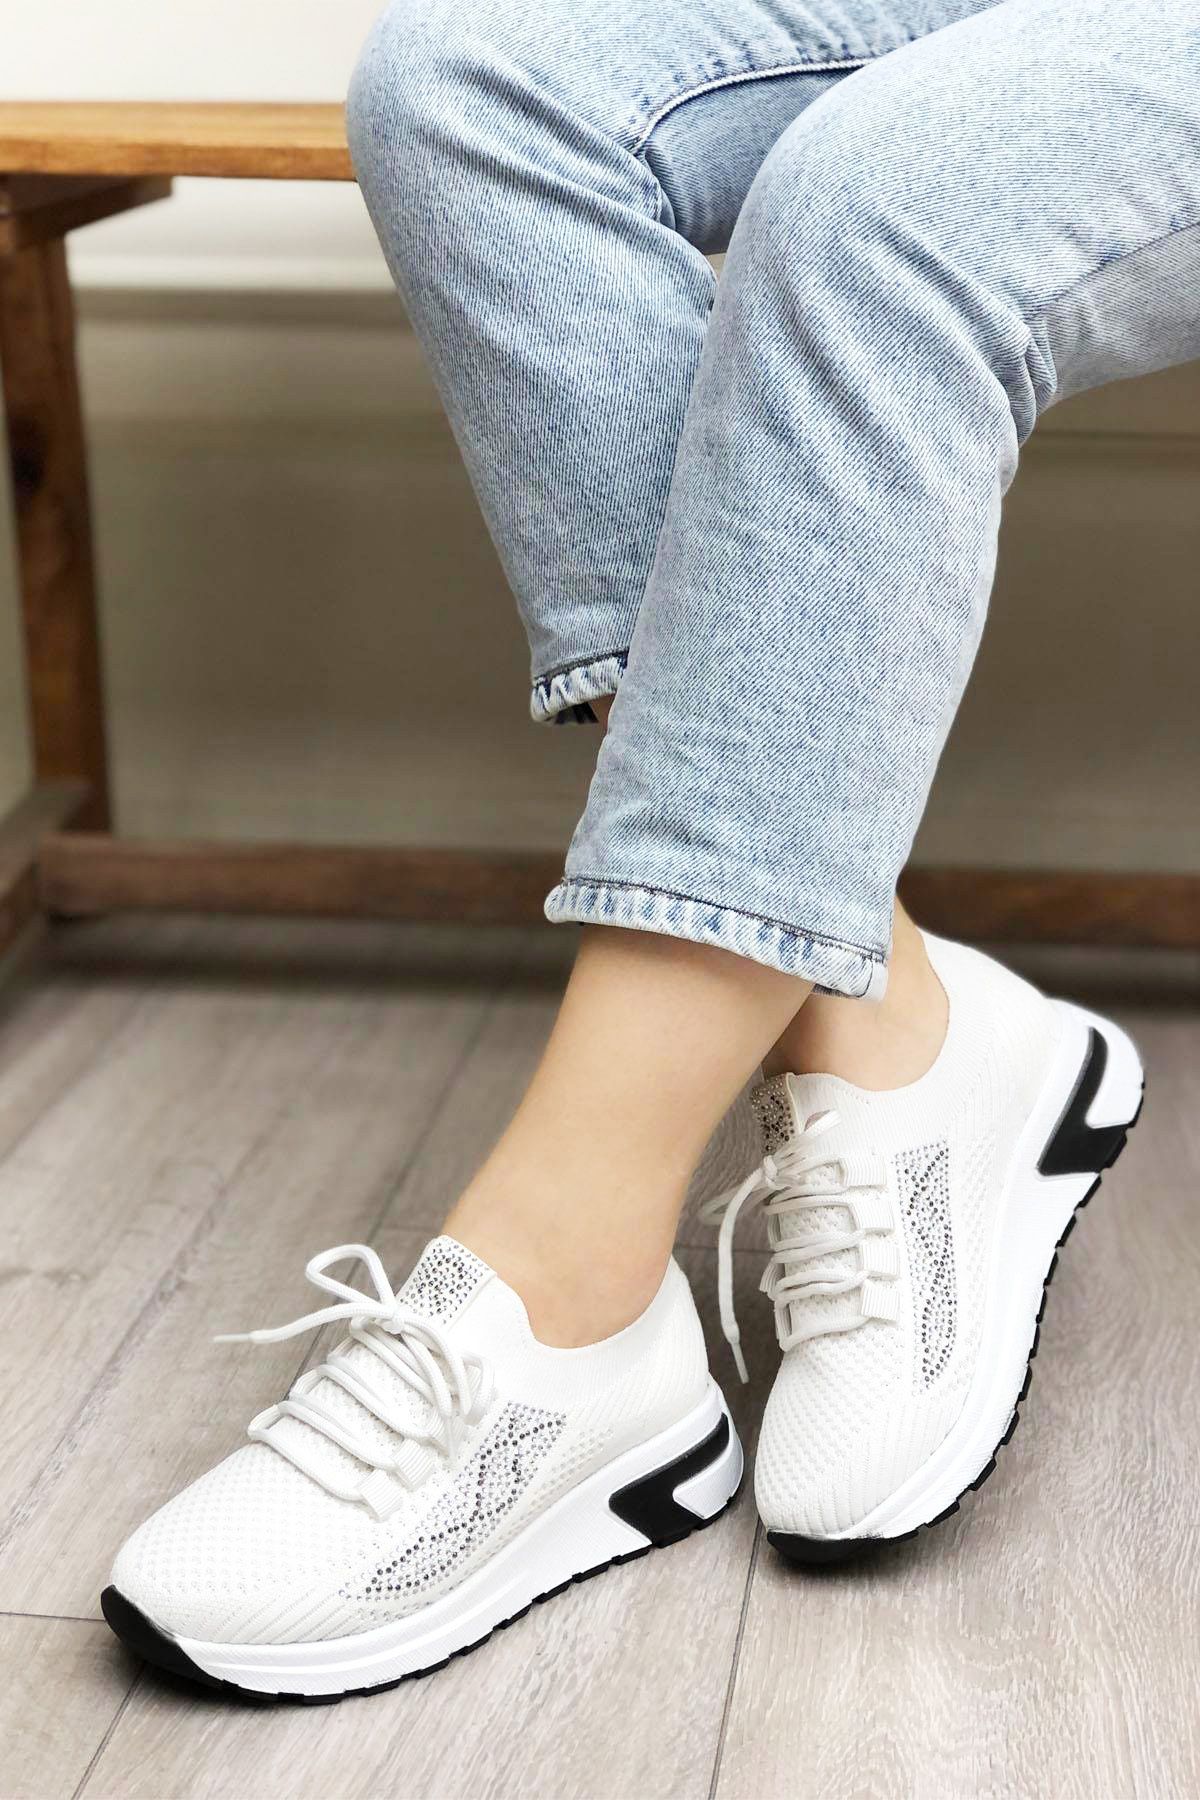 Afilli Kadın Beyaz Kalın Platform Taban Triko Taşlı Parlak Hafif Yürüyüş Günlük Sneaker Spor Ayakkabı